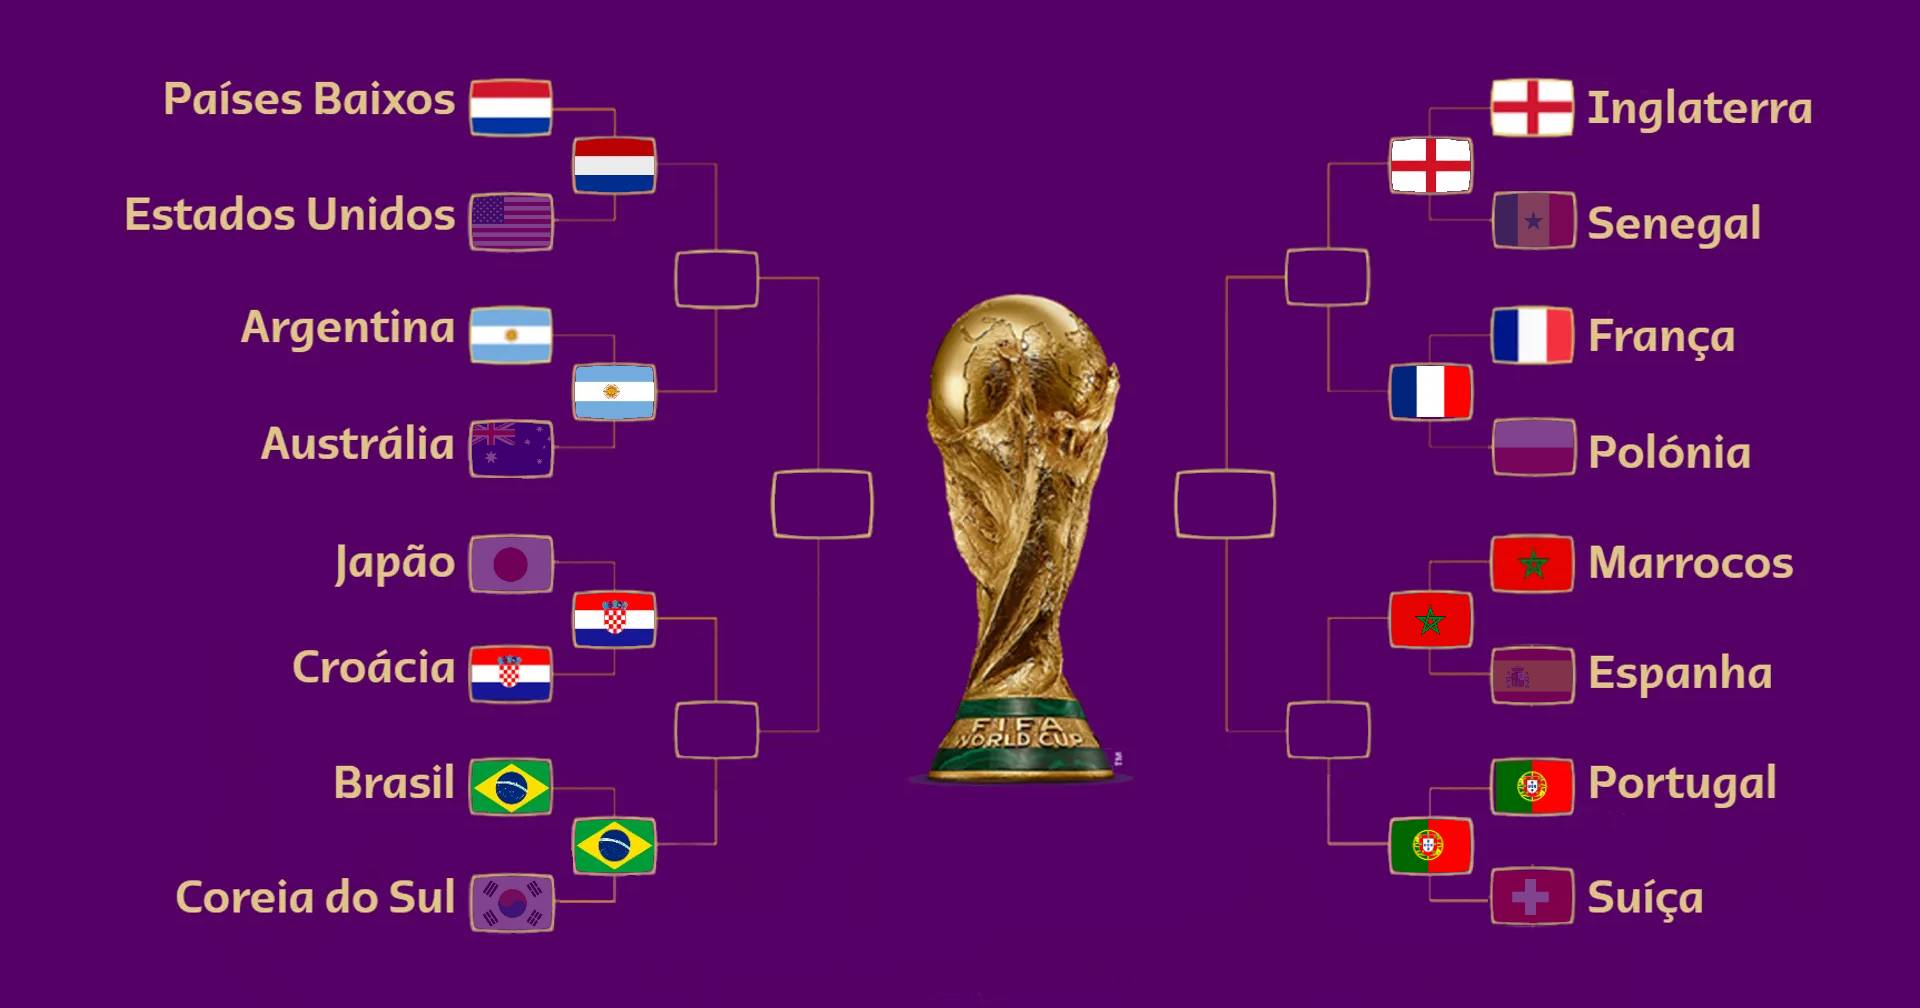 Tabela e datas das quartas de final na Copa do Mundo 2022 no Catar